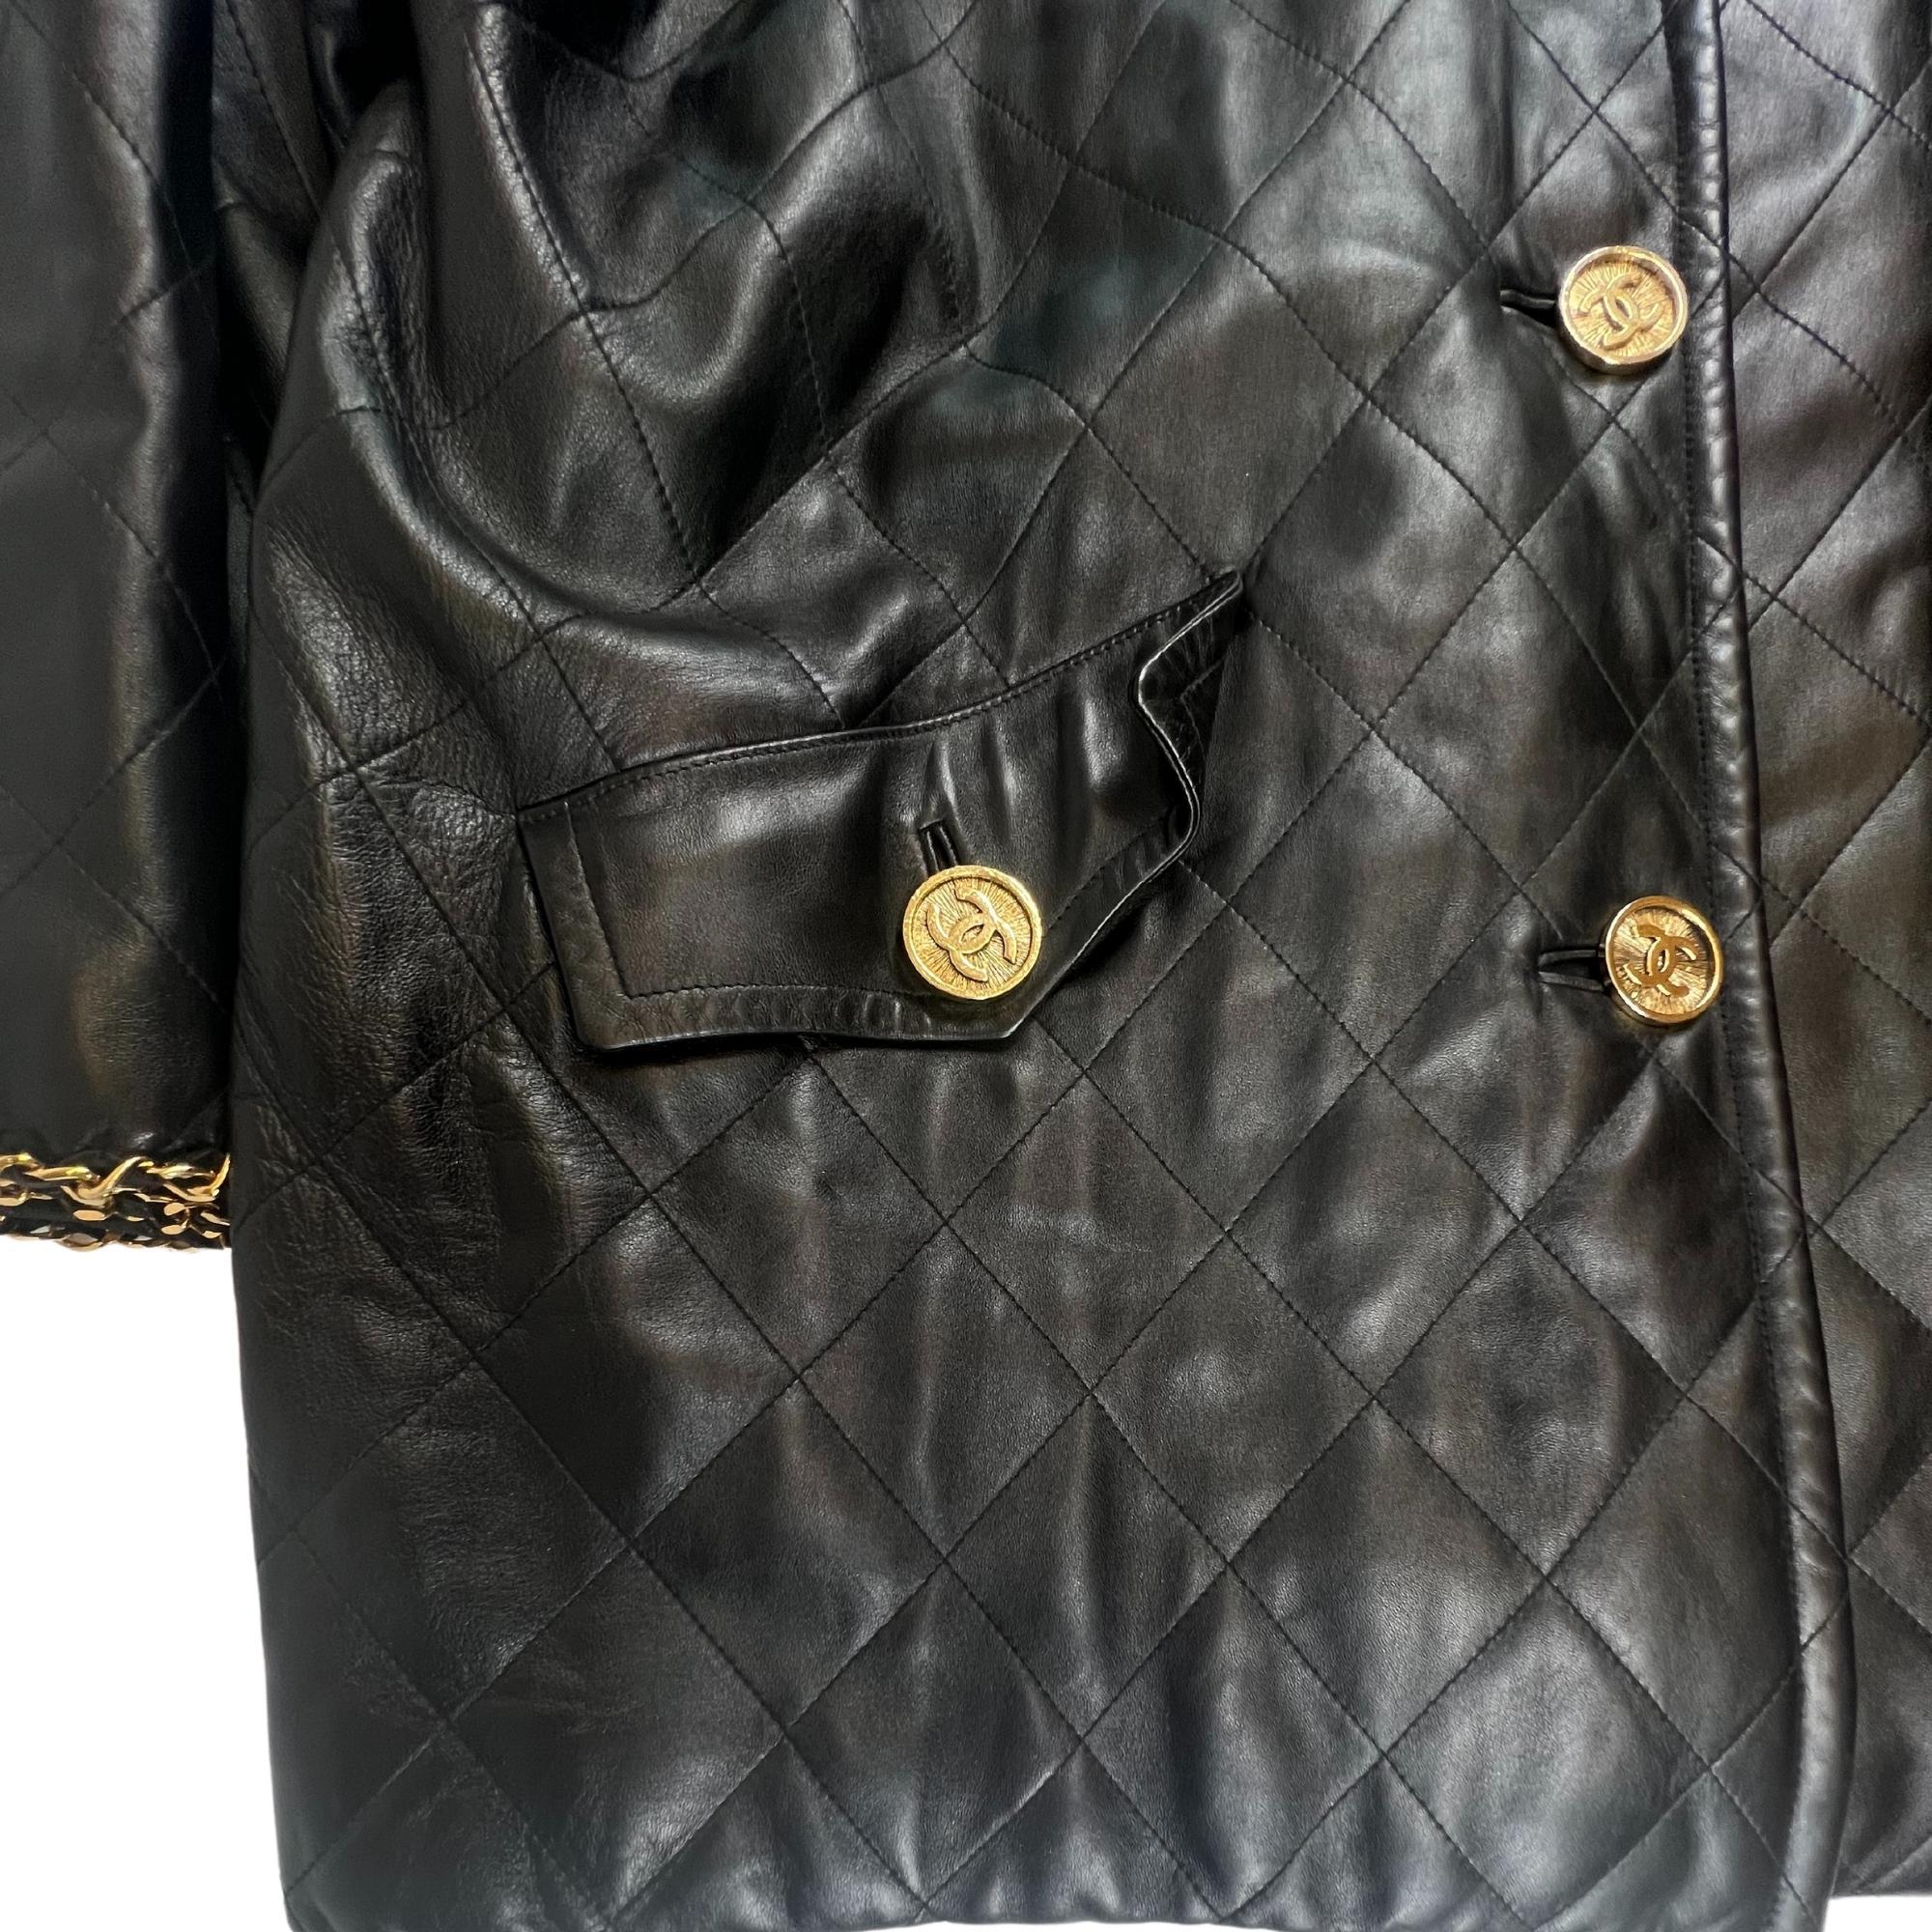 Chanel Vintage Black Leather Swing Coat (FR44) 3